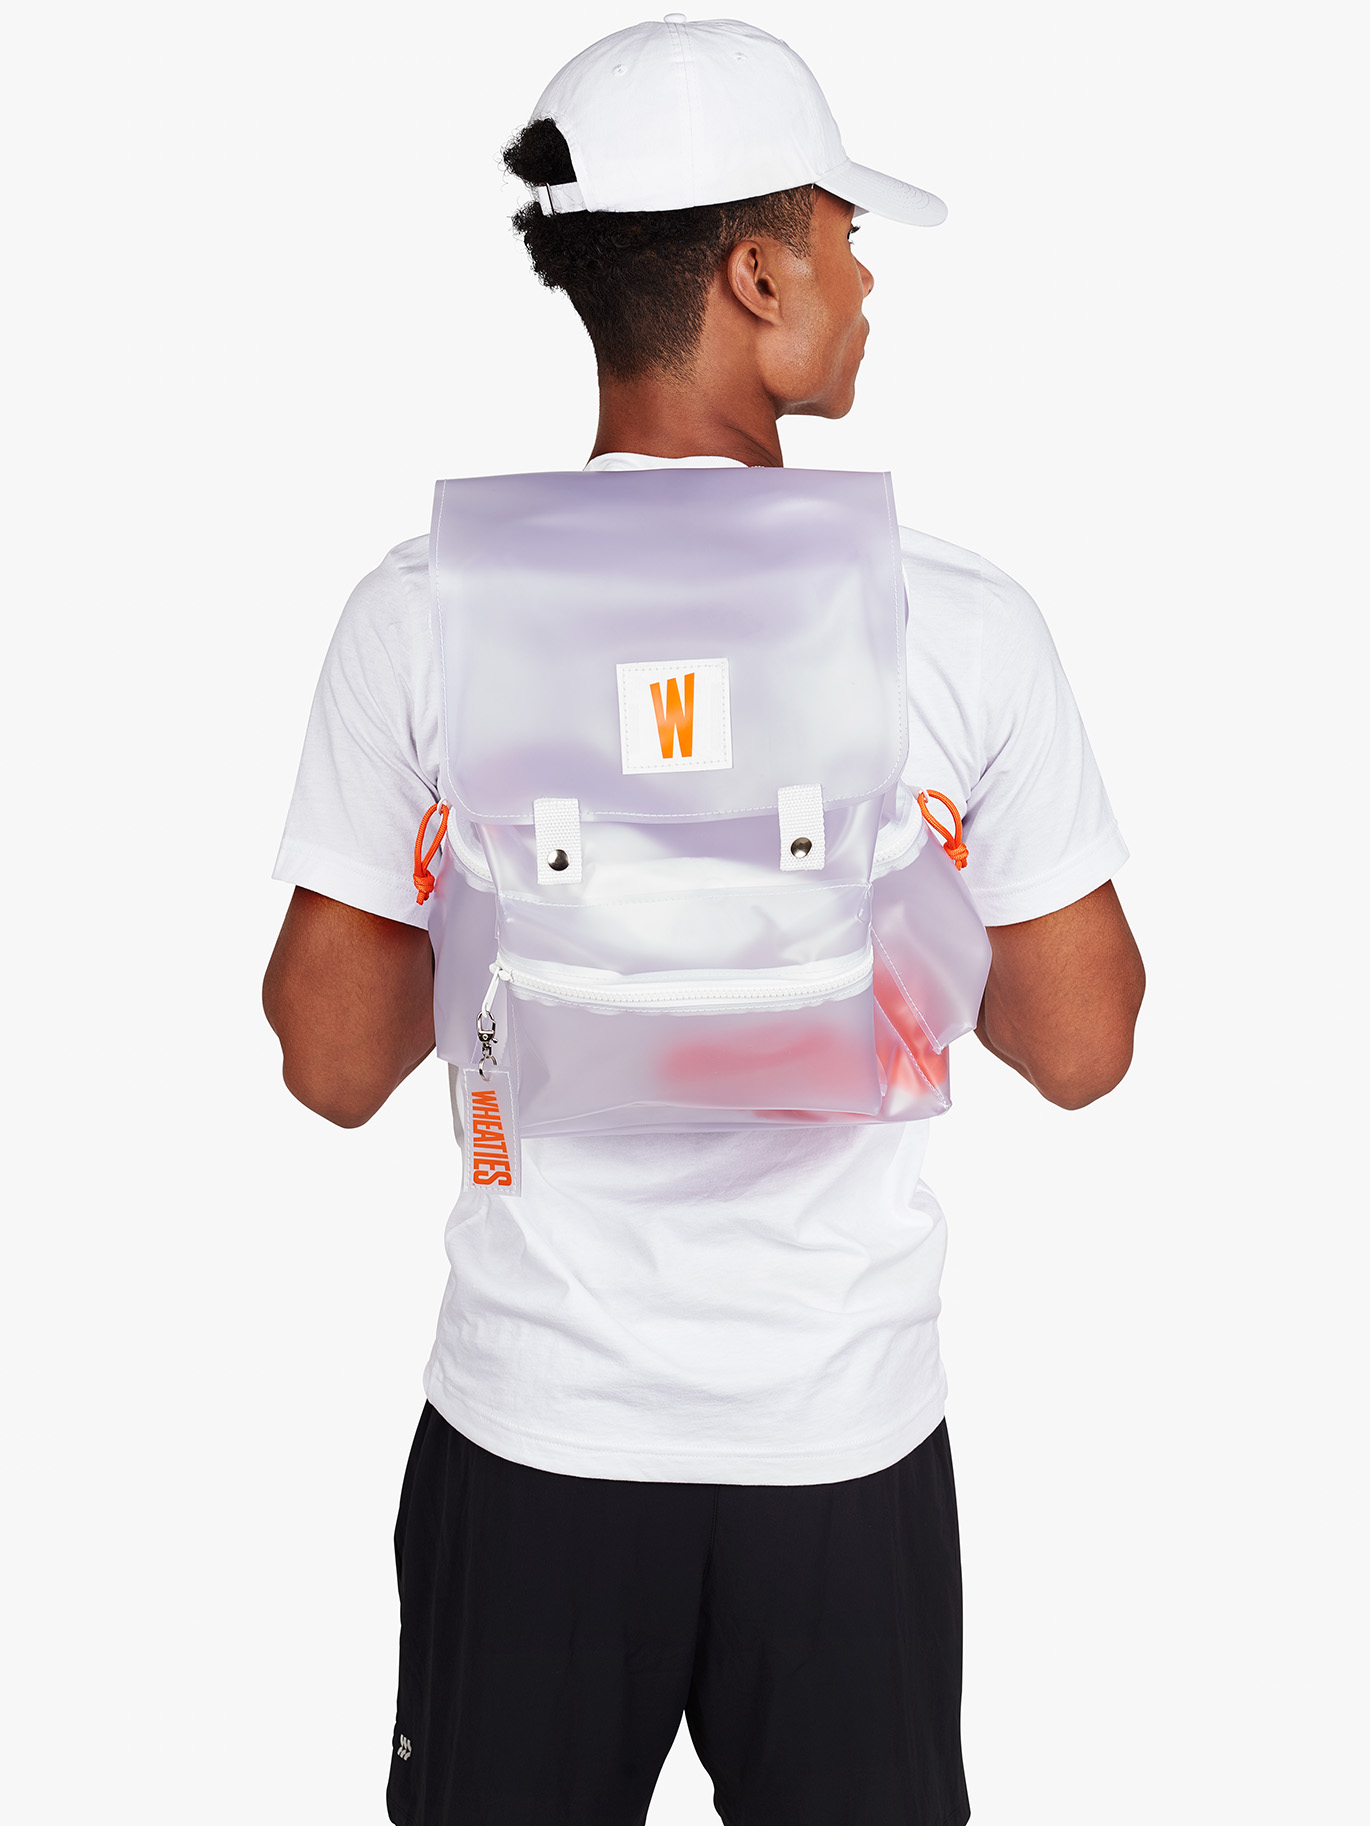 NextGen Backpack